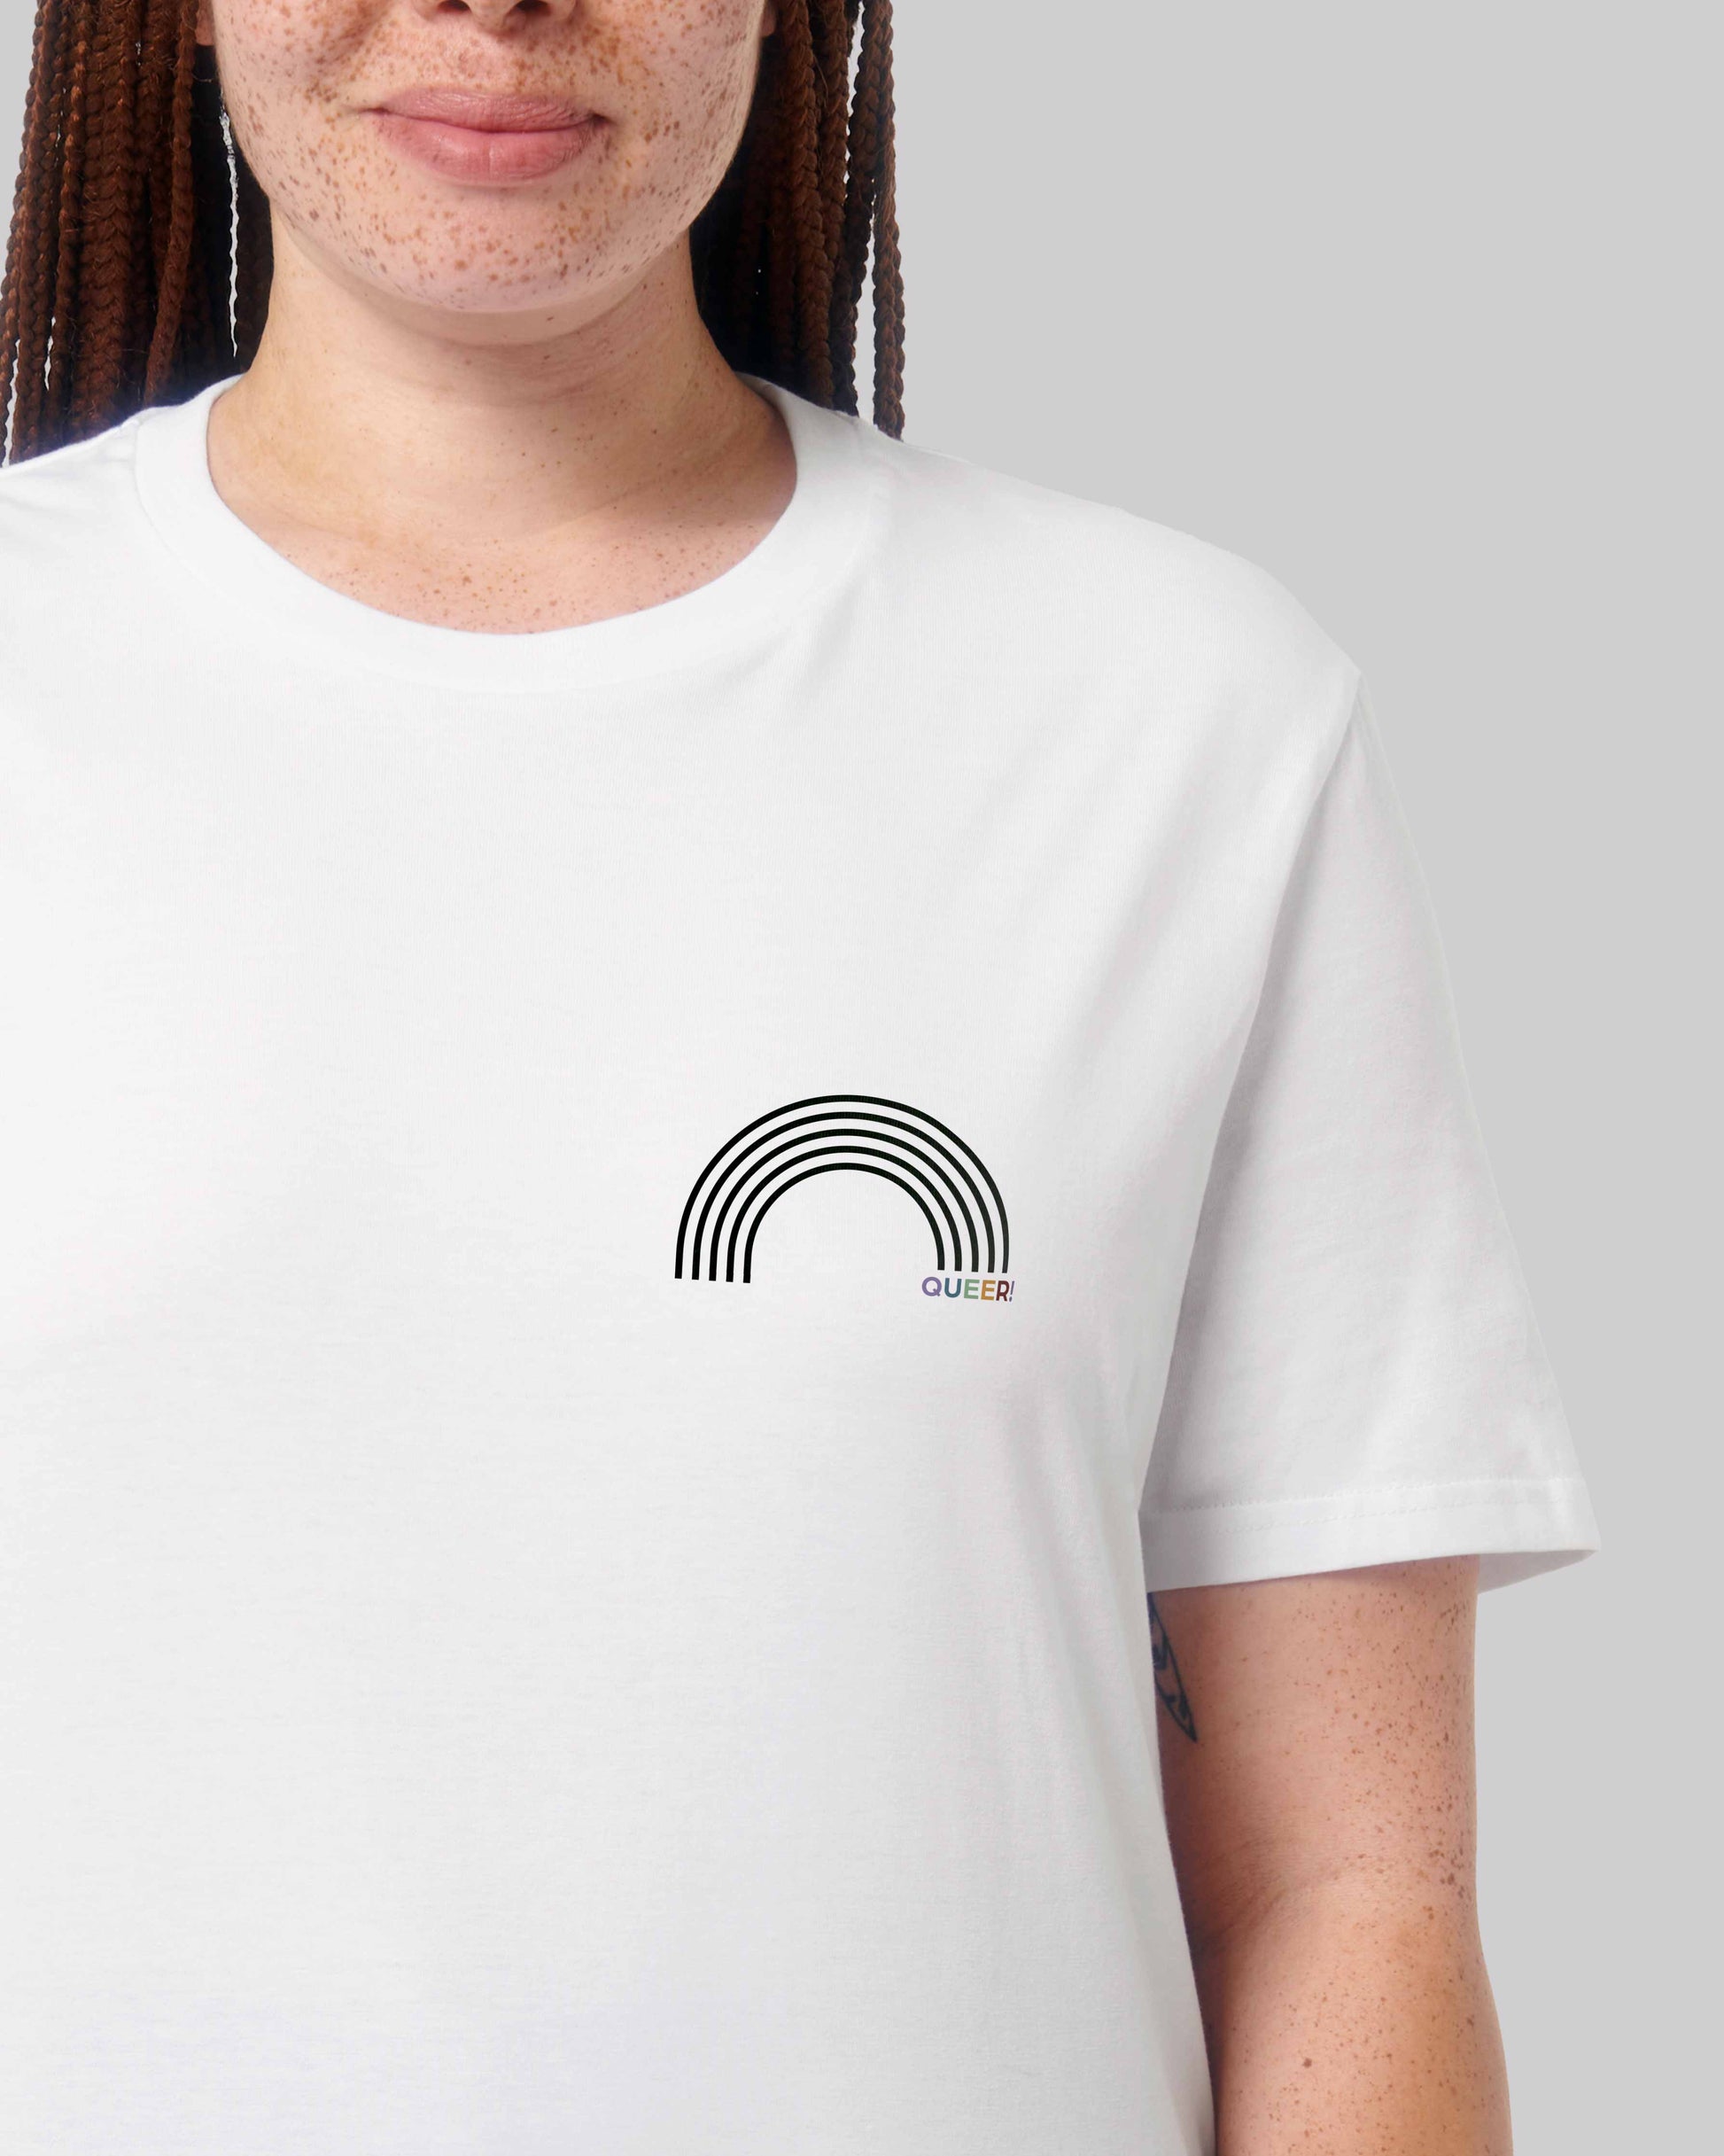 EINHORST® unisex Organic Shirt in Weiß mit dem Motiv "queer Regenbogen" in der Kombination schwarzer Regenbogen mit bunter Schrift, Bild von weiblicher Person mit Shirt